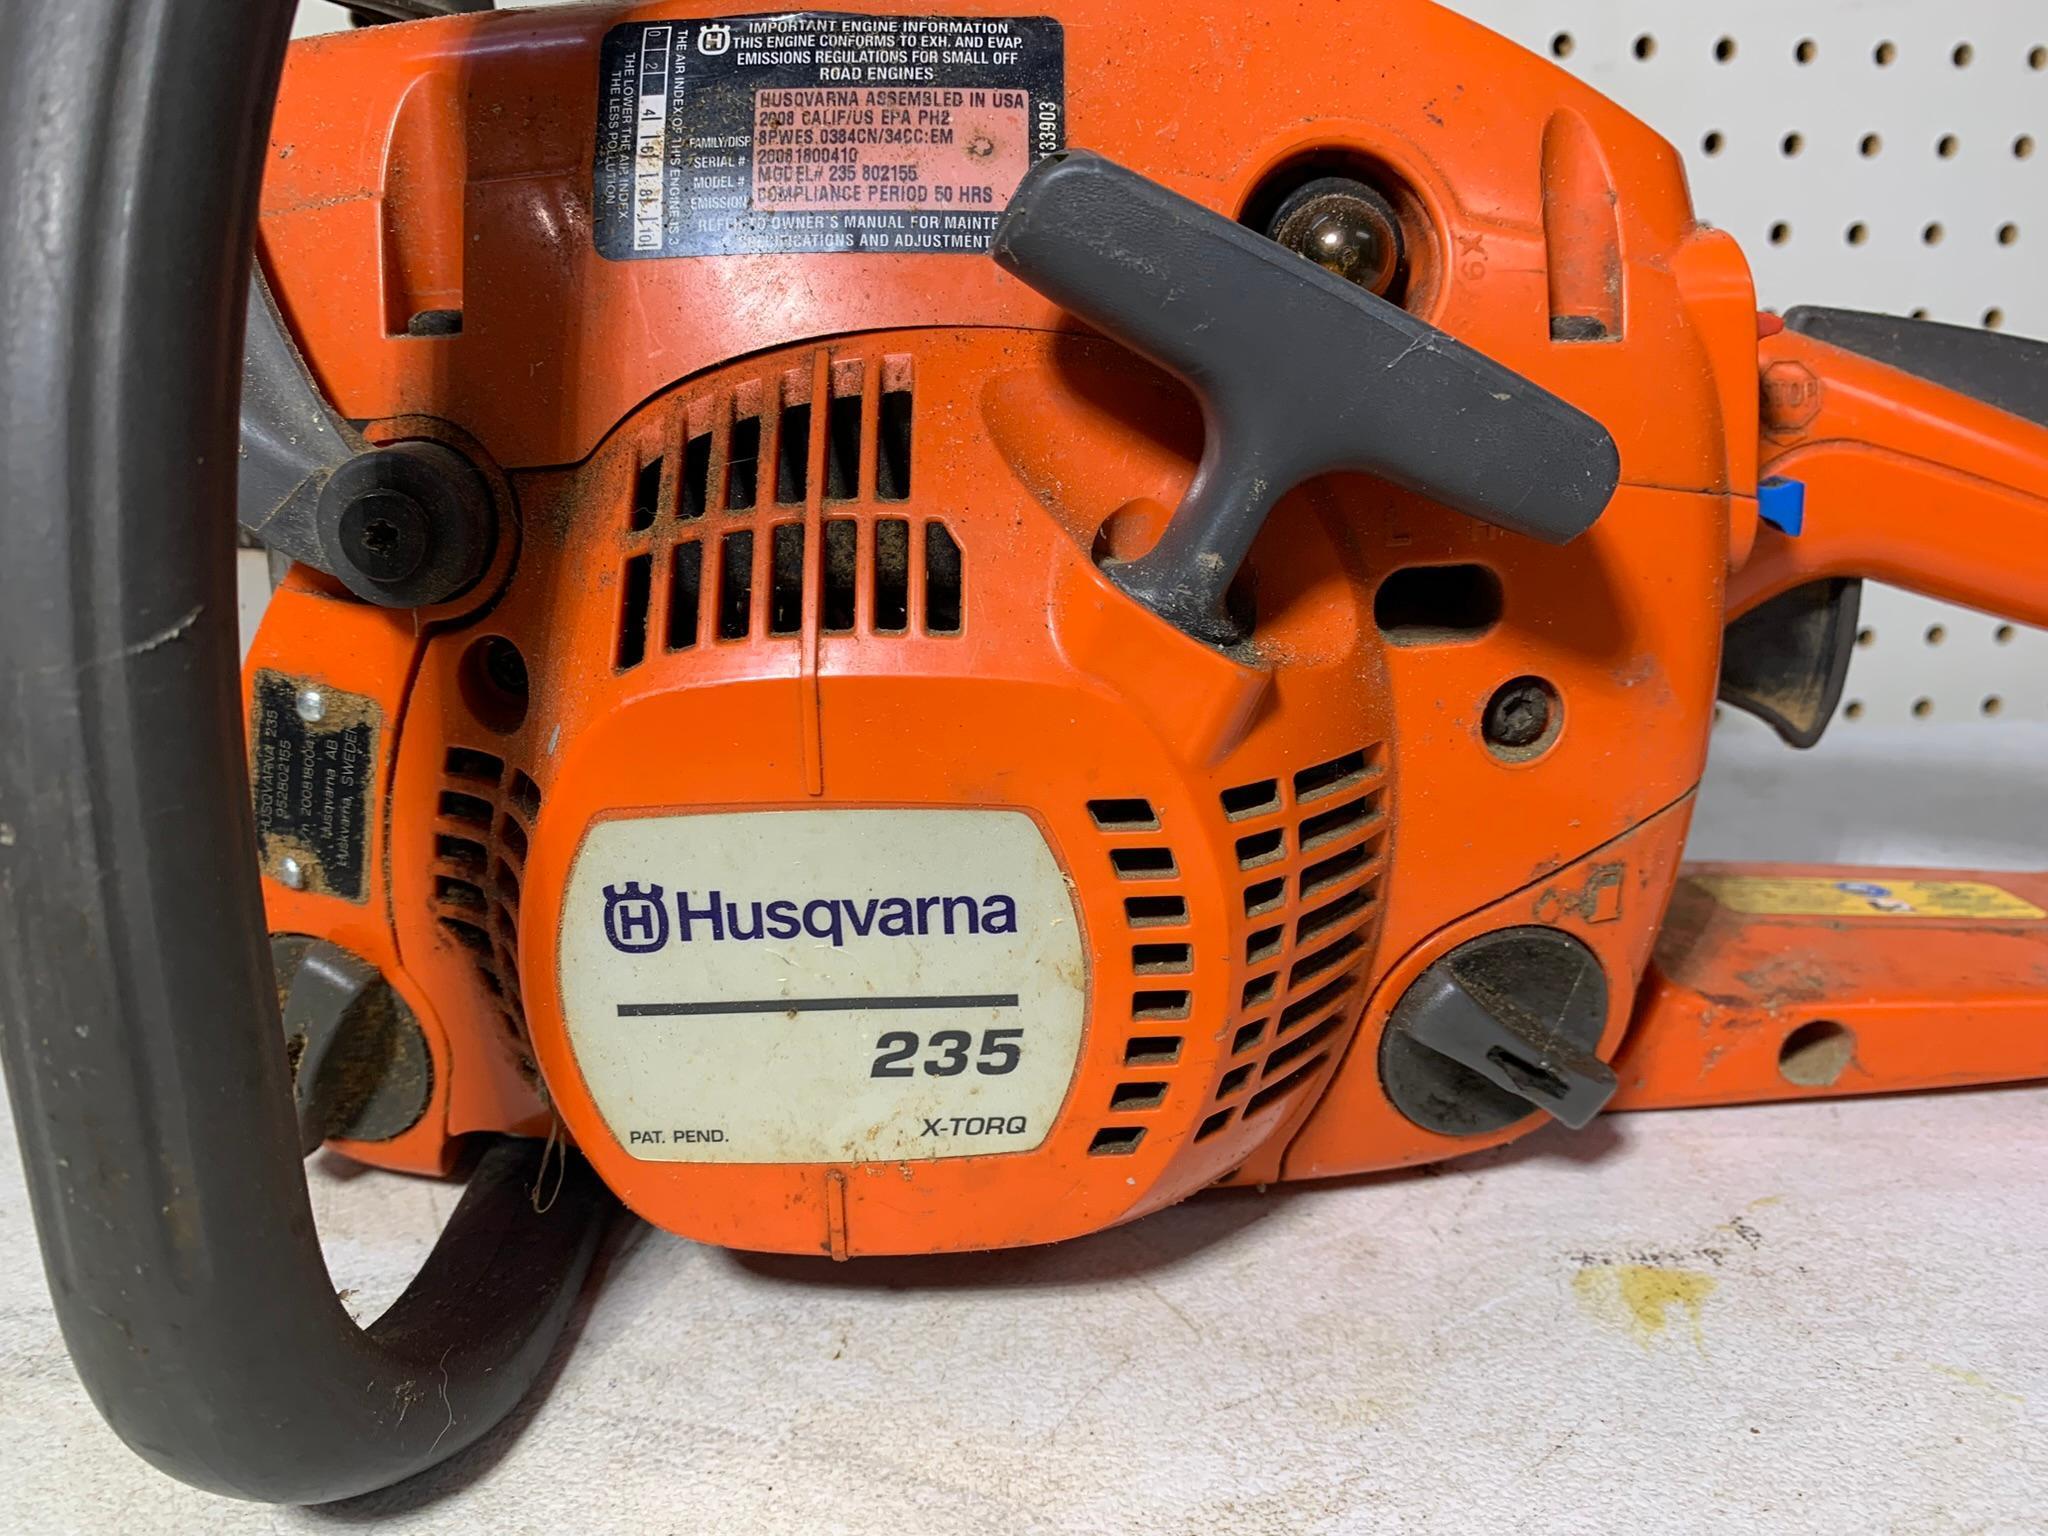 Husqvarna 235 X-TORQ Chainsaw